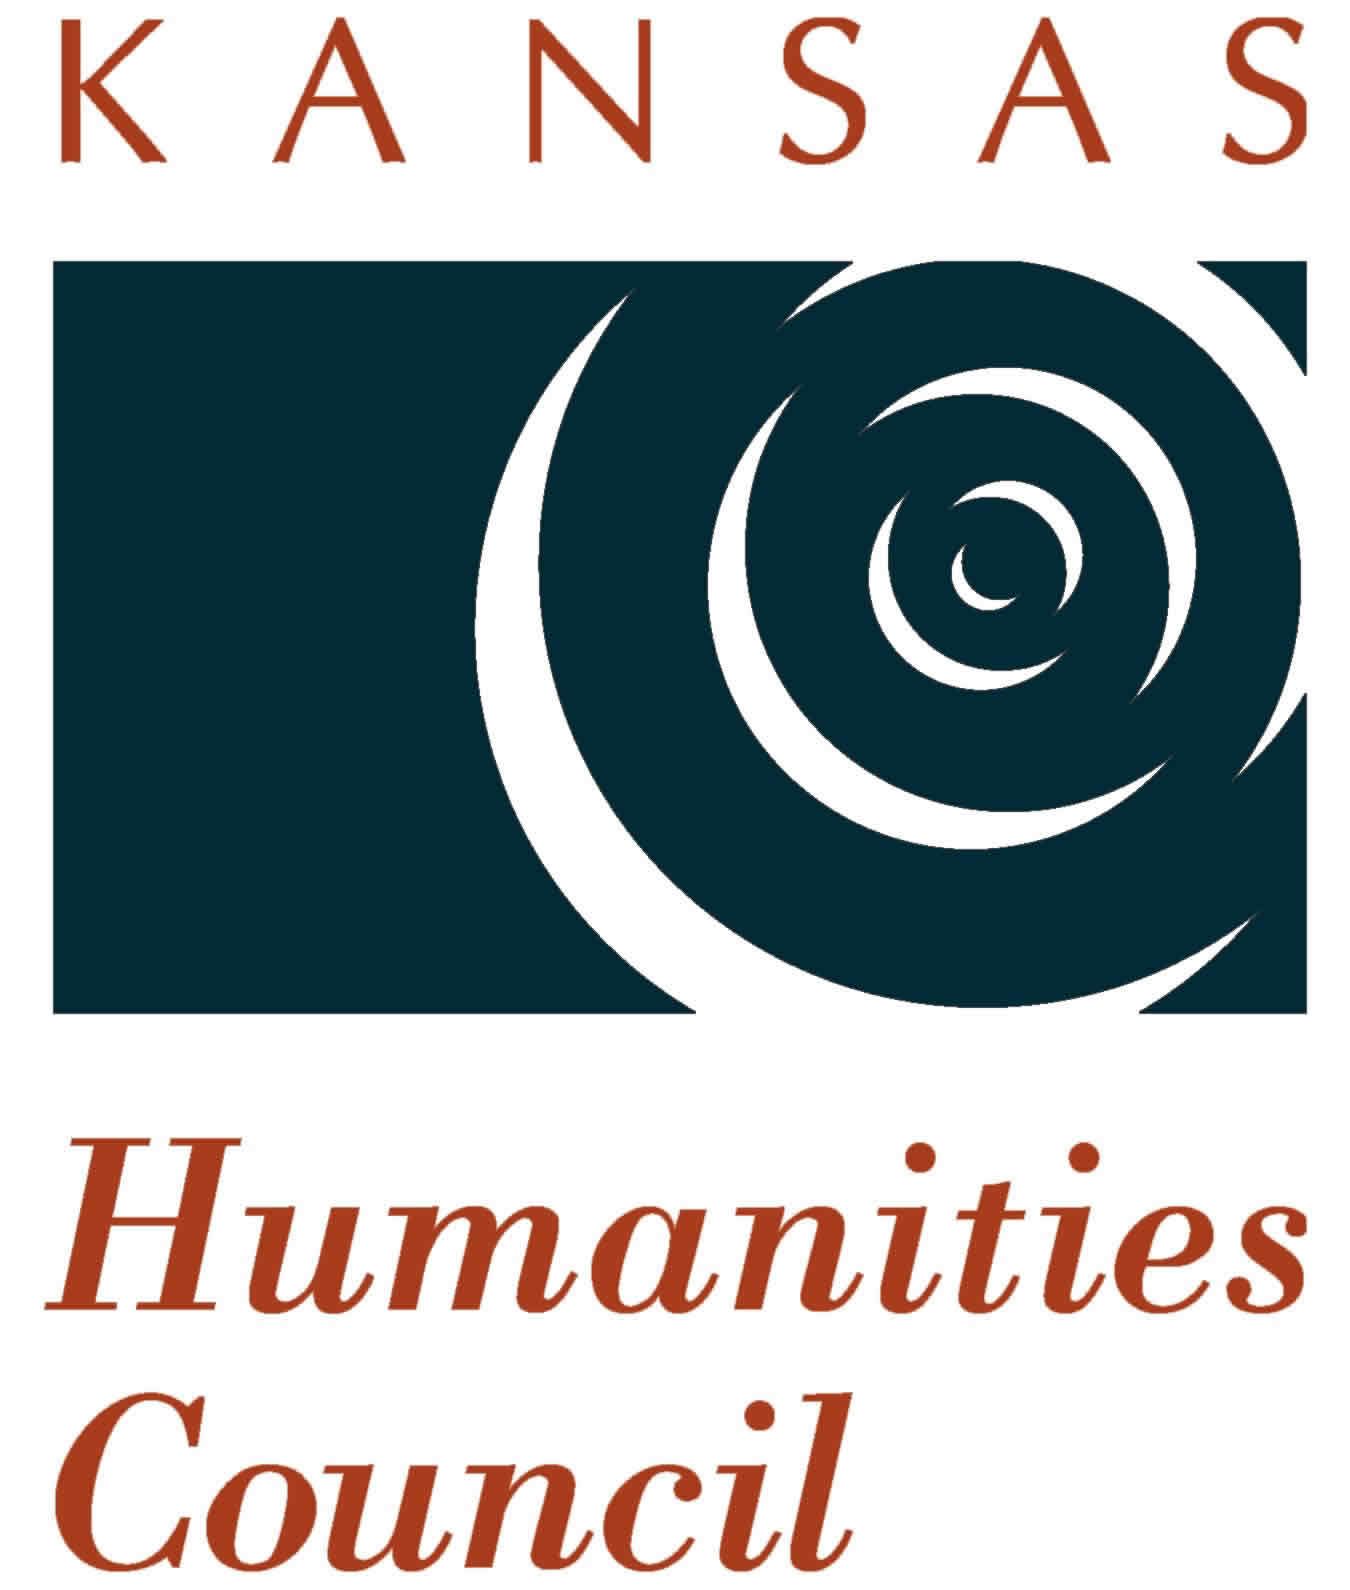 KHC Logo